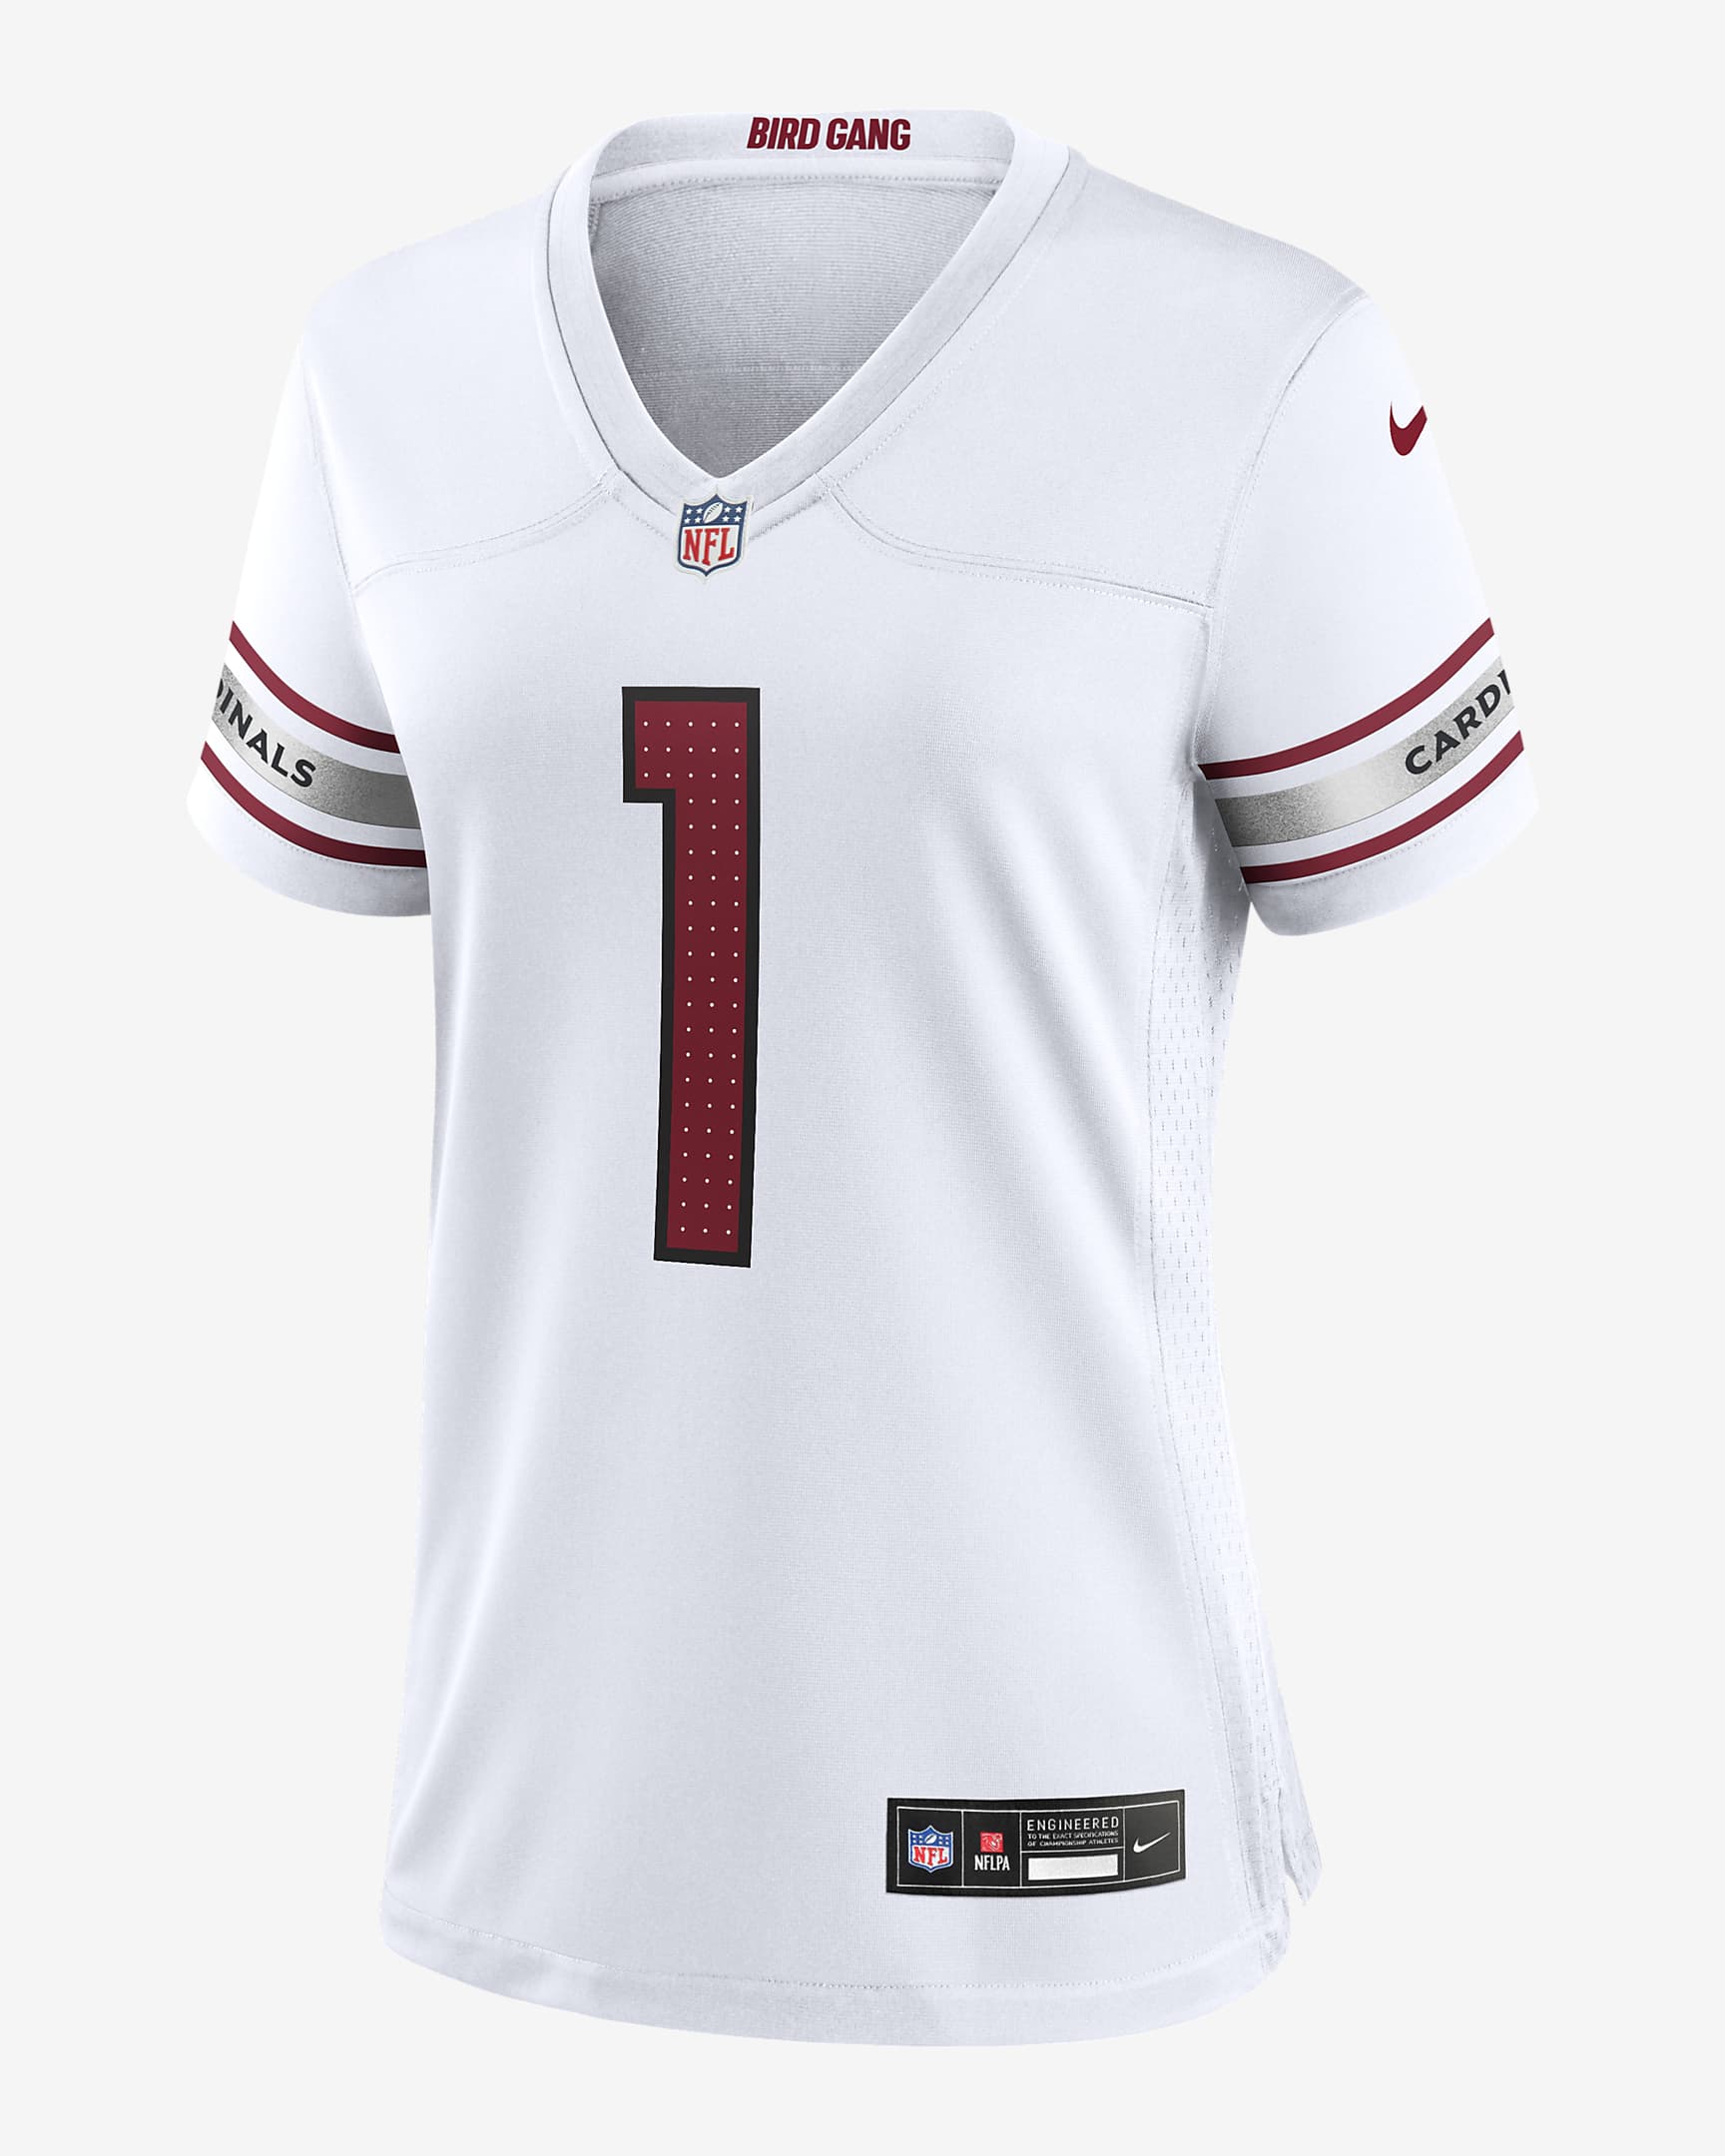 Kyler Murray Arizona Cardinals Women's Nike NFL Game Football Jersey ...